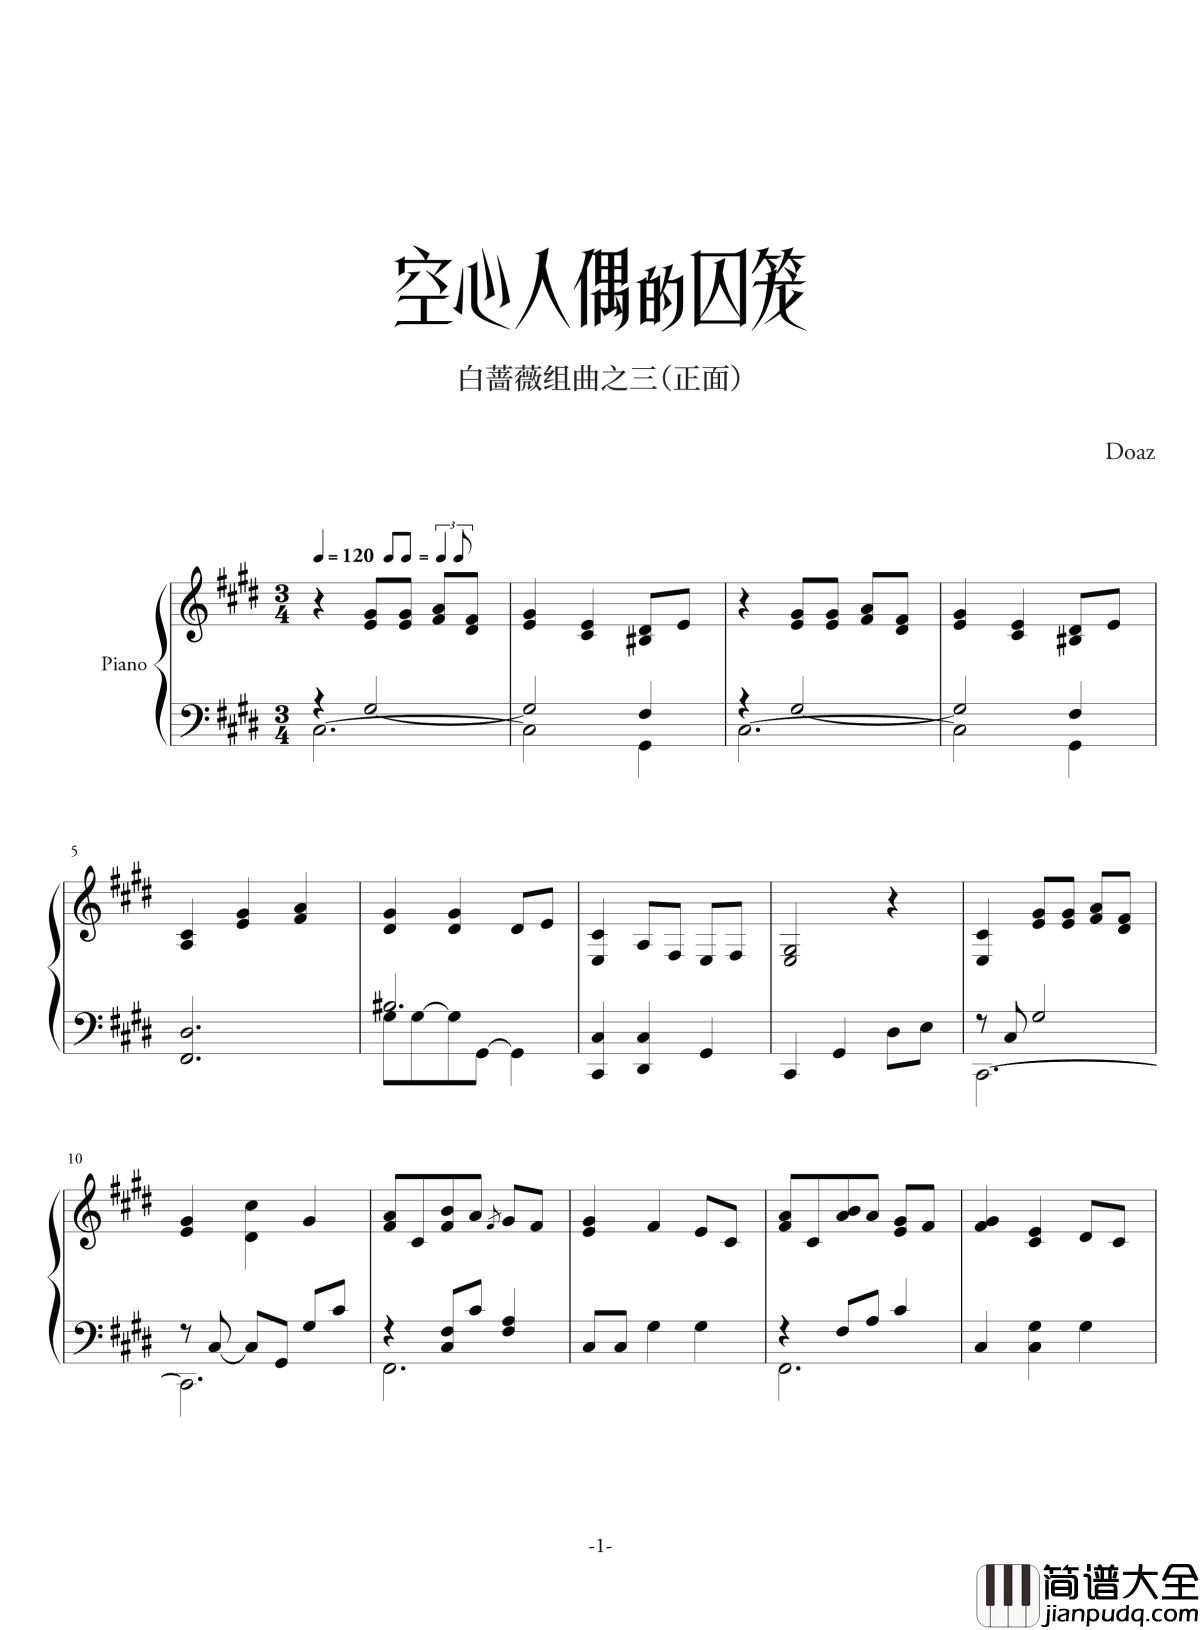 空心人偶的囚笼白蔷薇组曲⒊钢琴谱_正_aqtq314